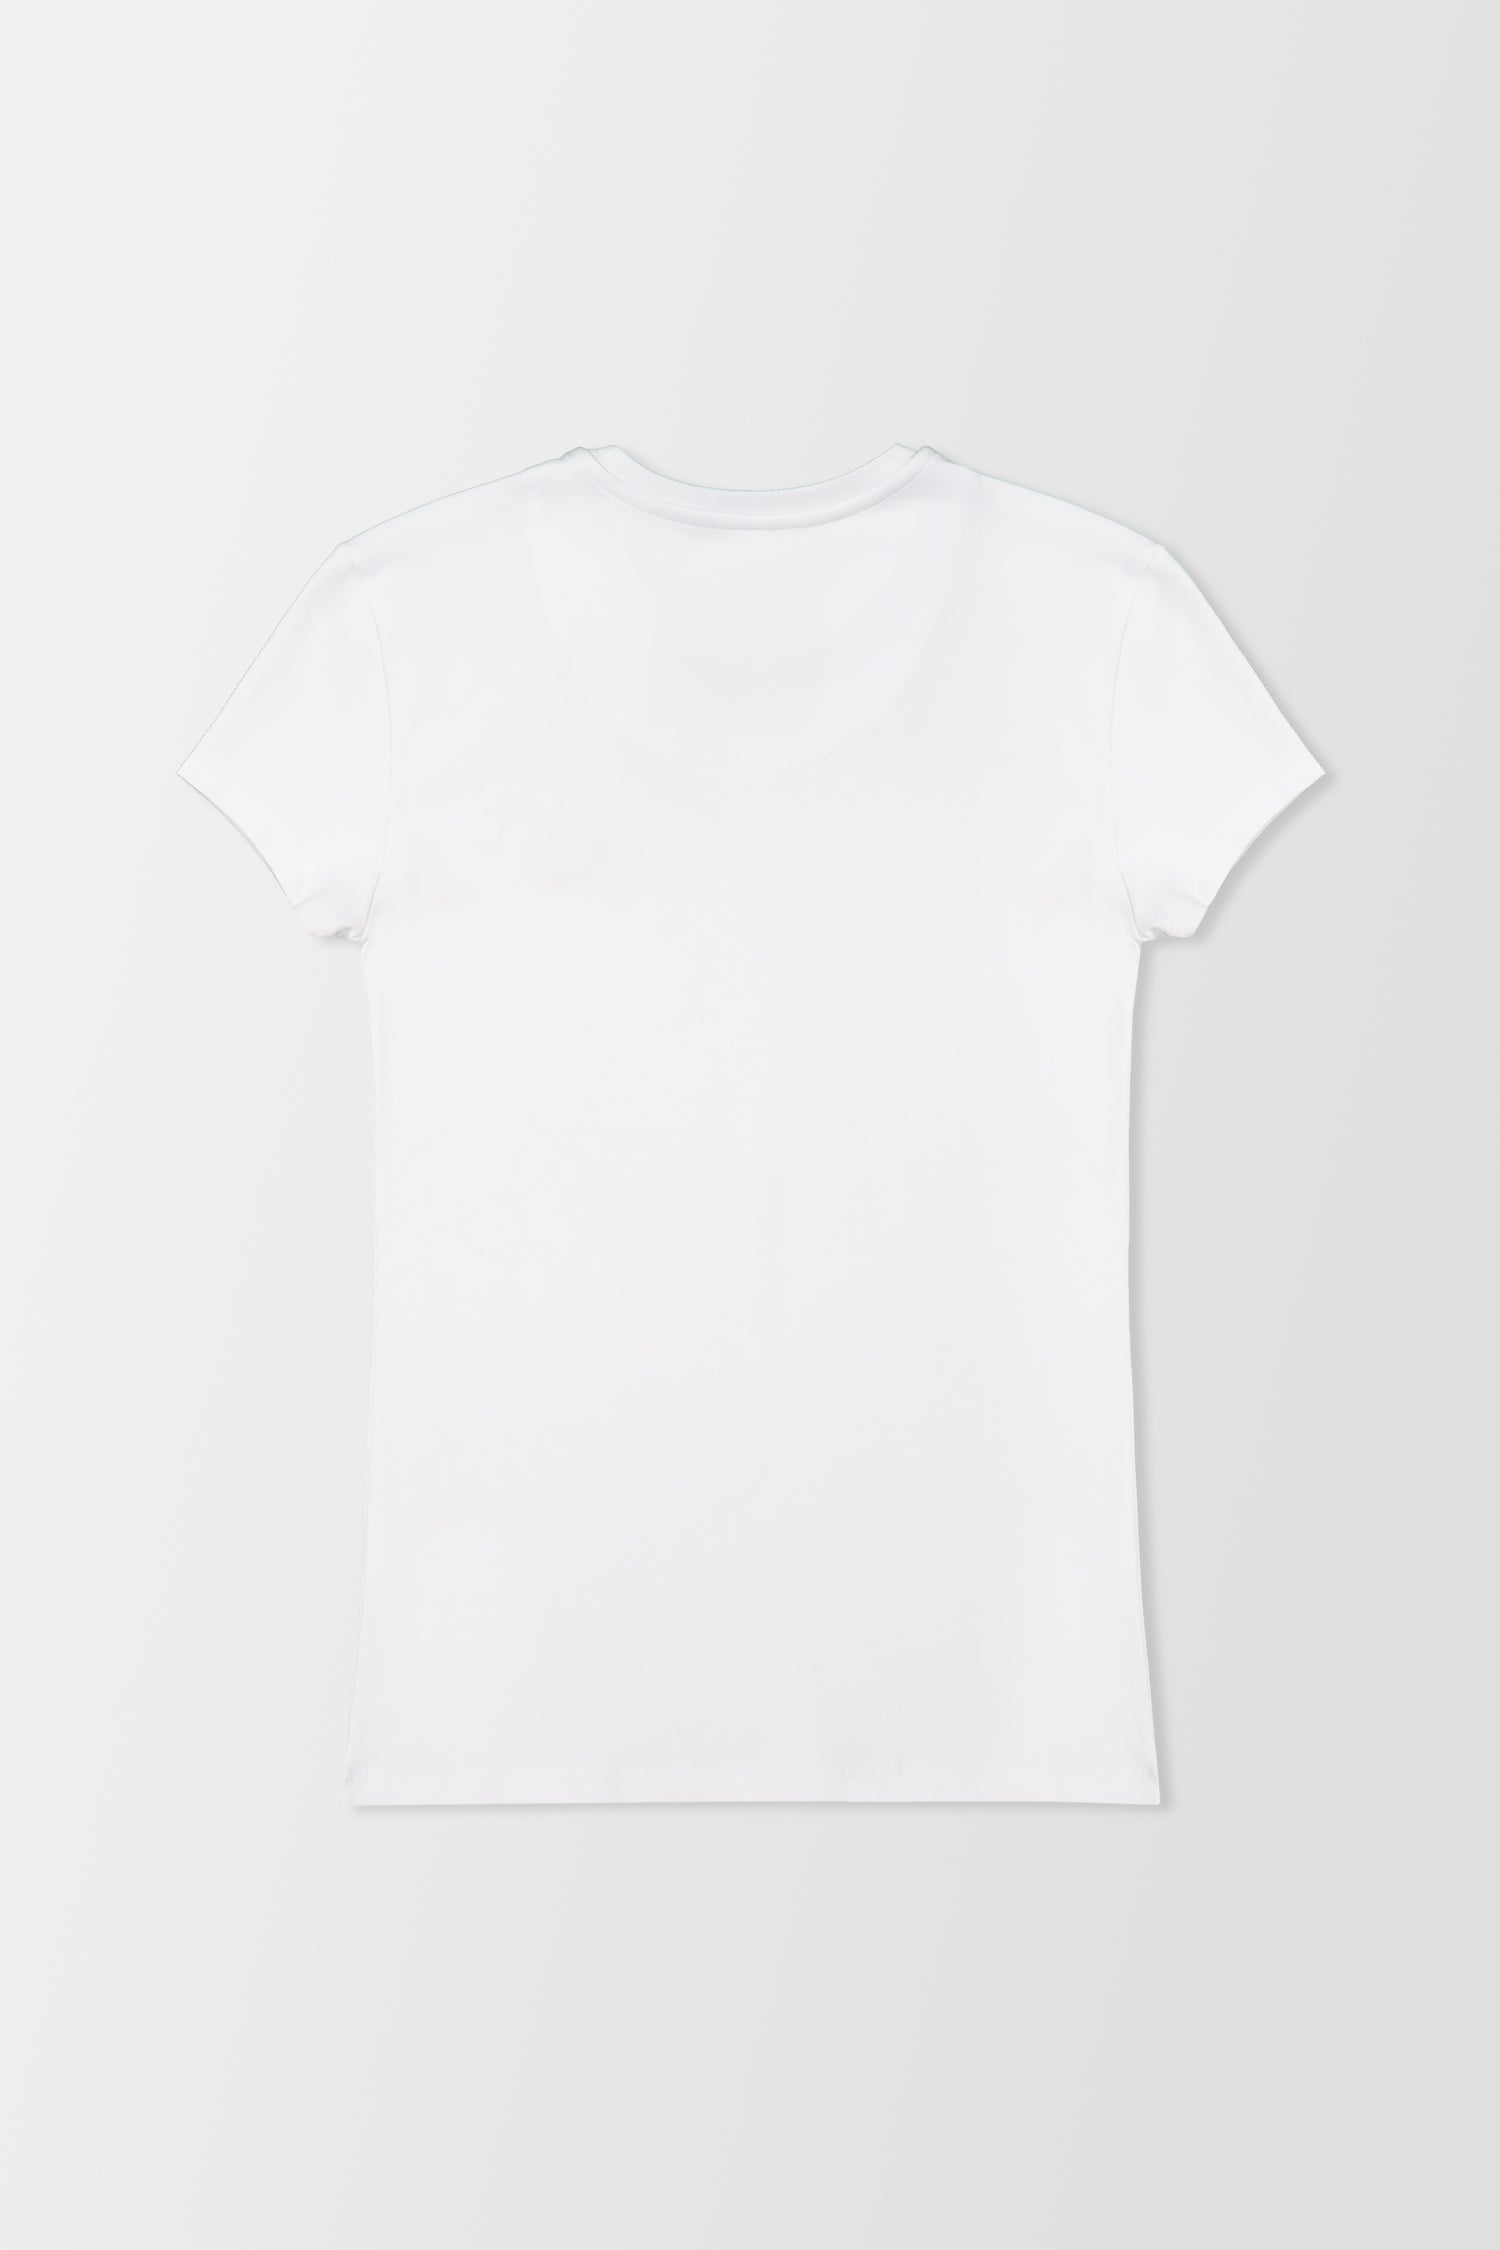 Philipp Plein White Round Neck SS Love Plein T-Shirt